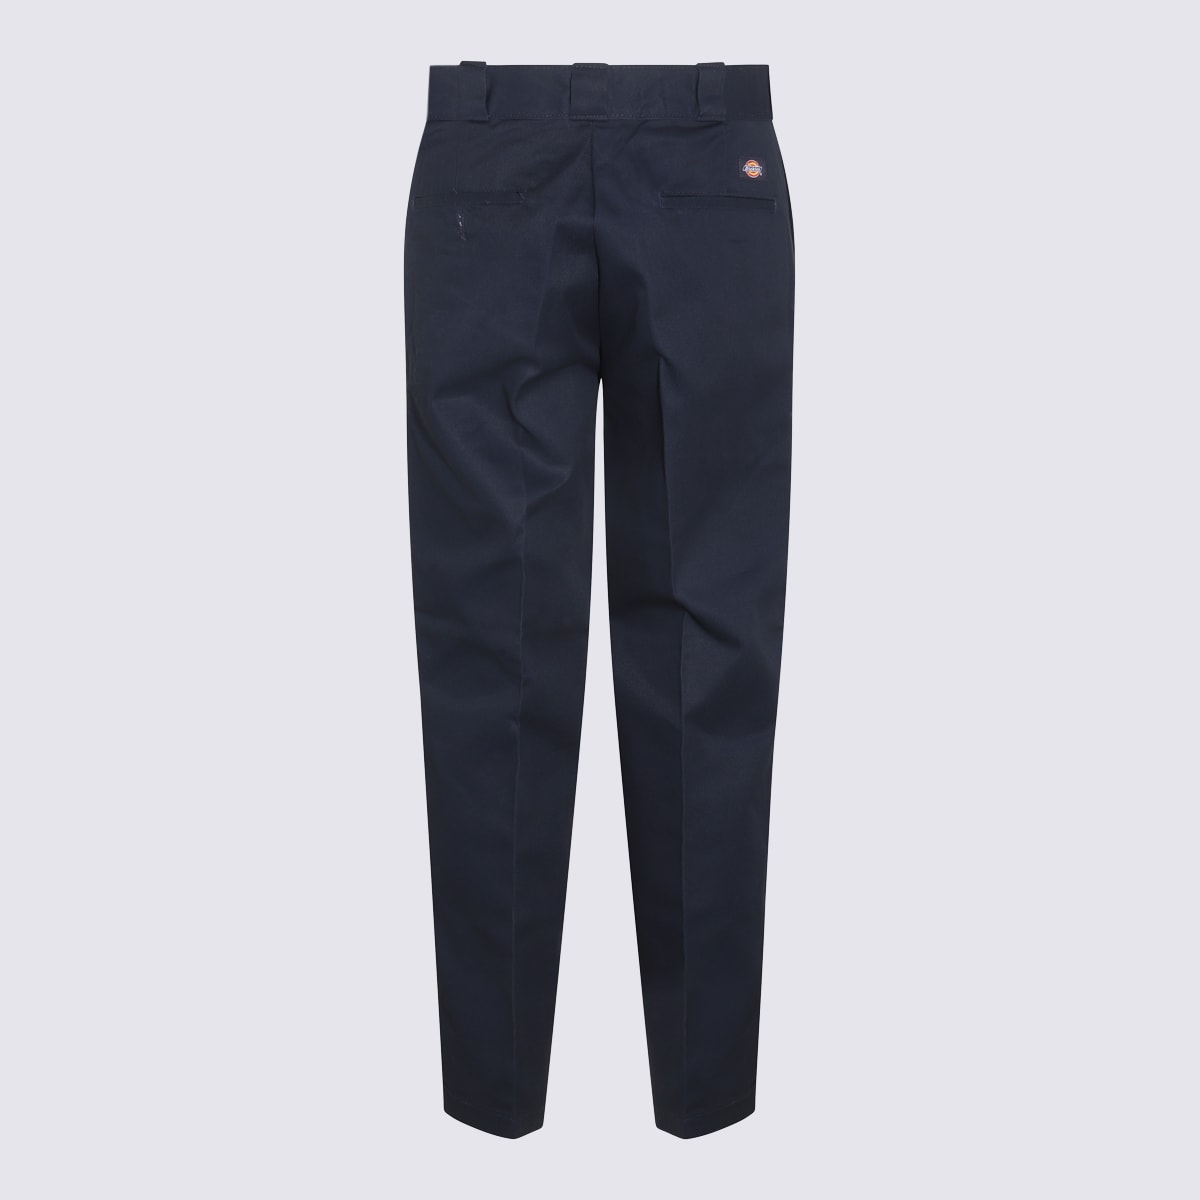 Navy Blue Cotton Pants